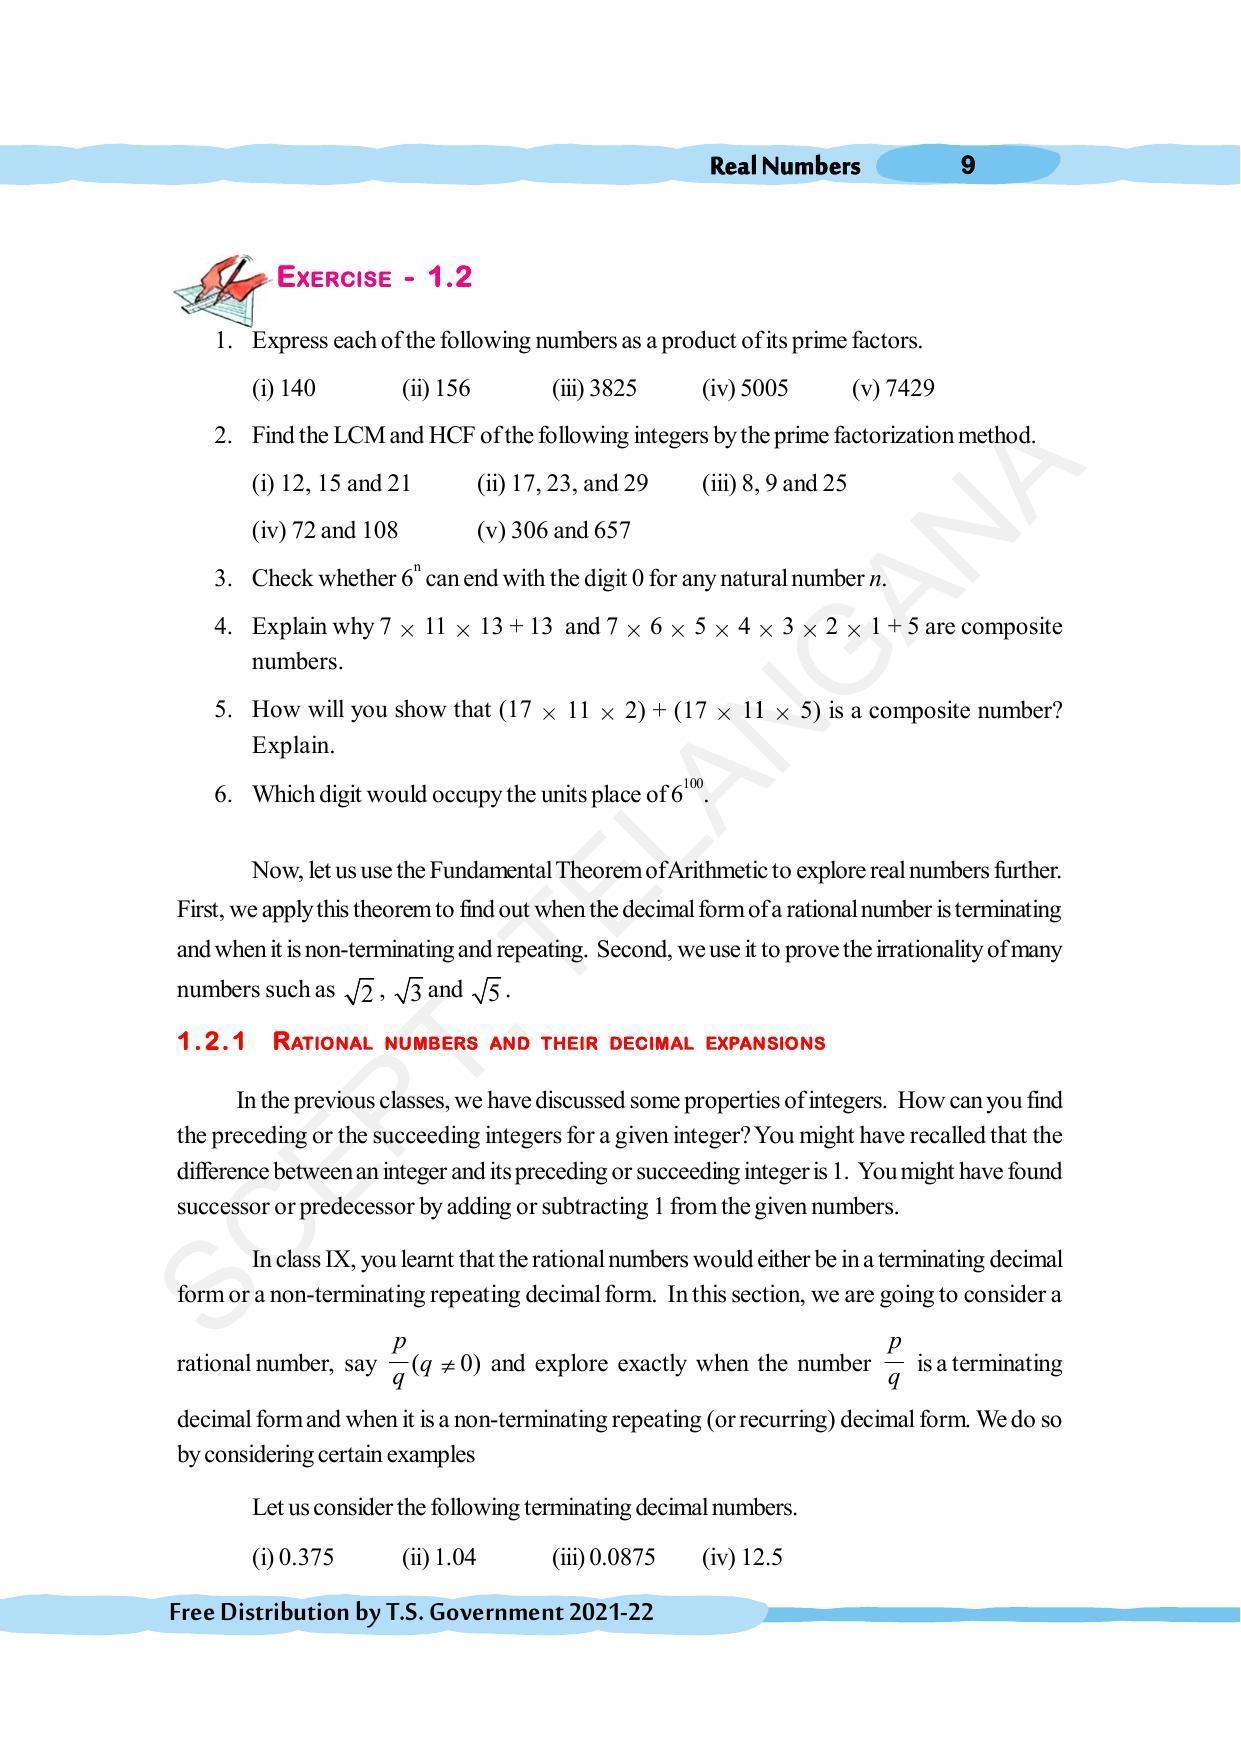 TS SCERT Class 10 Maths (English Medium) Text Book - Page 19